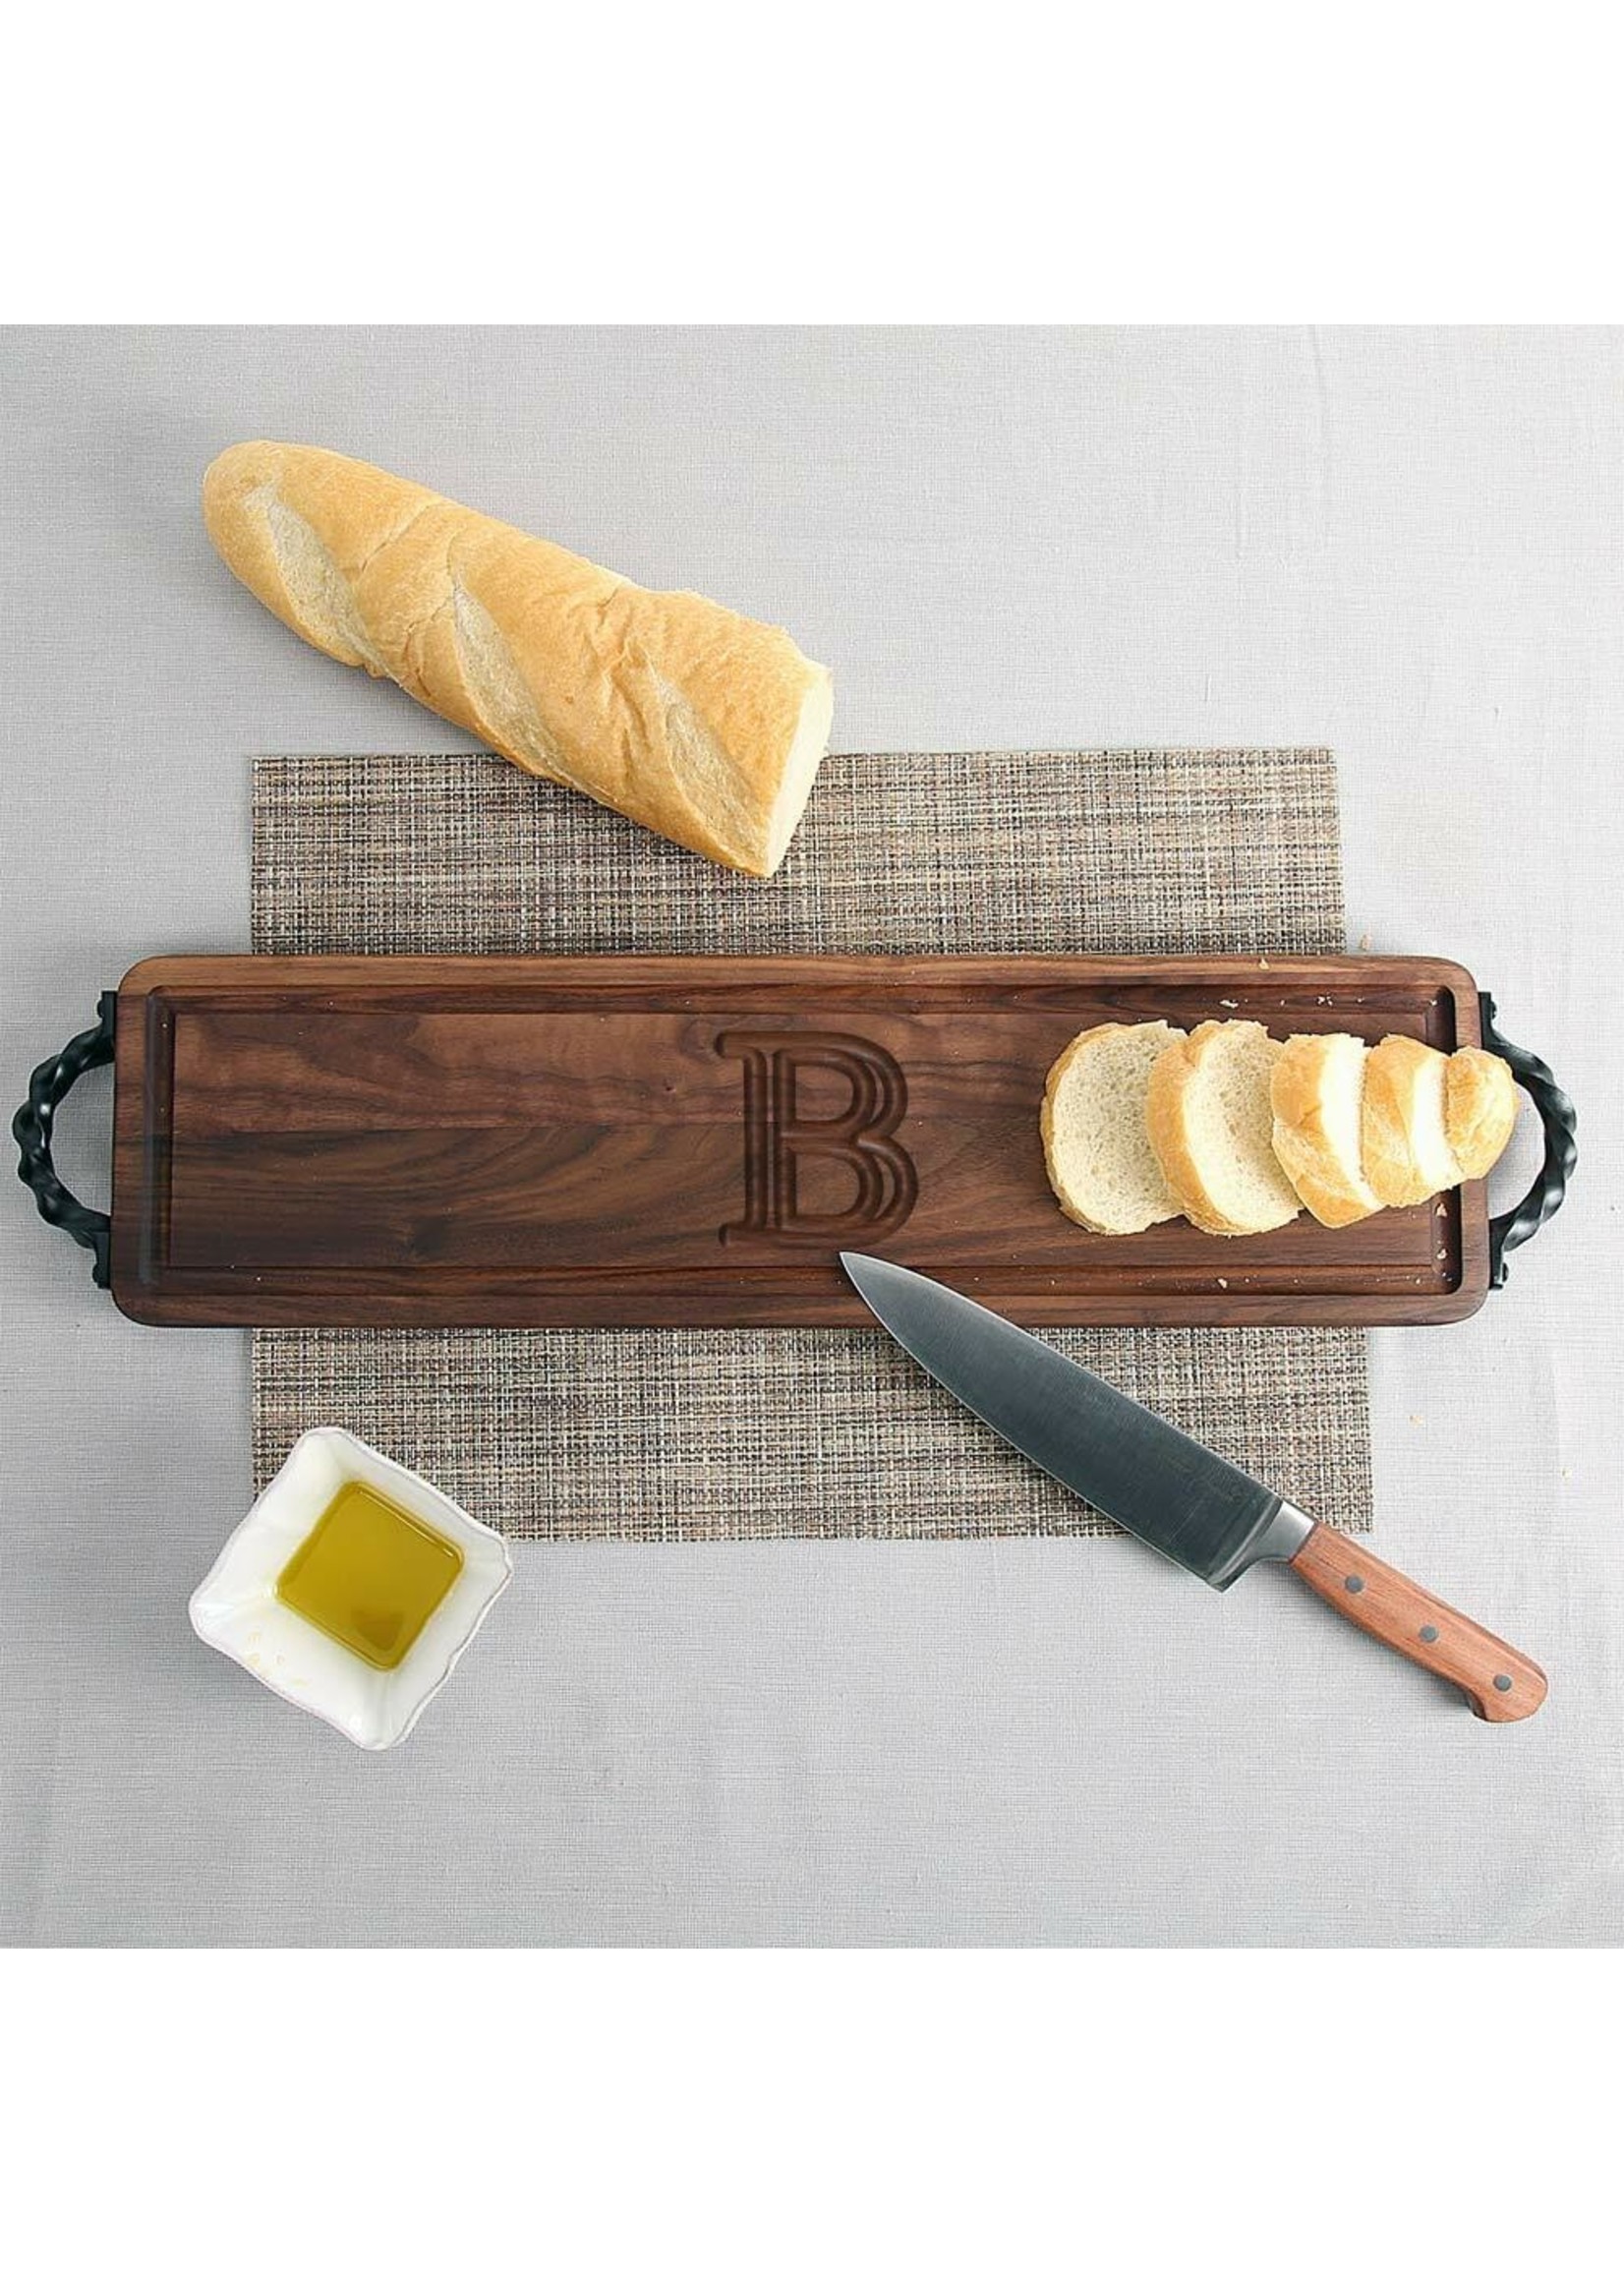 bigwood boards Bread Board w/ Twisted Handles